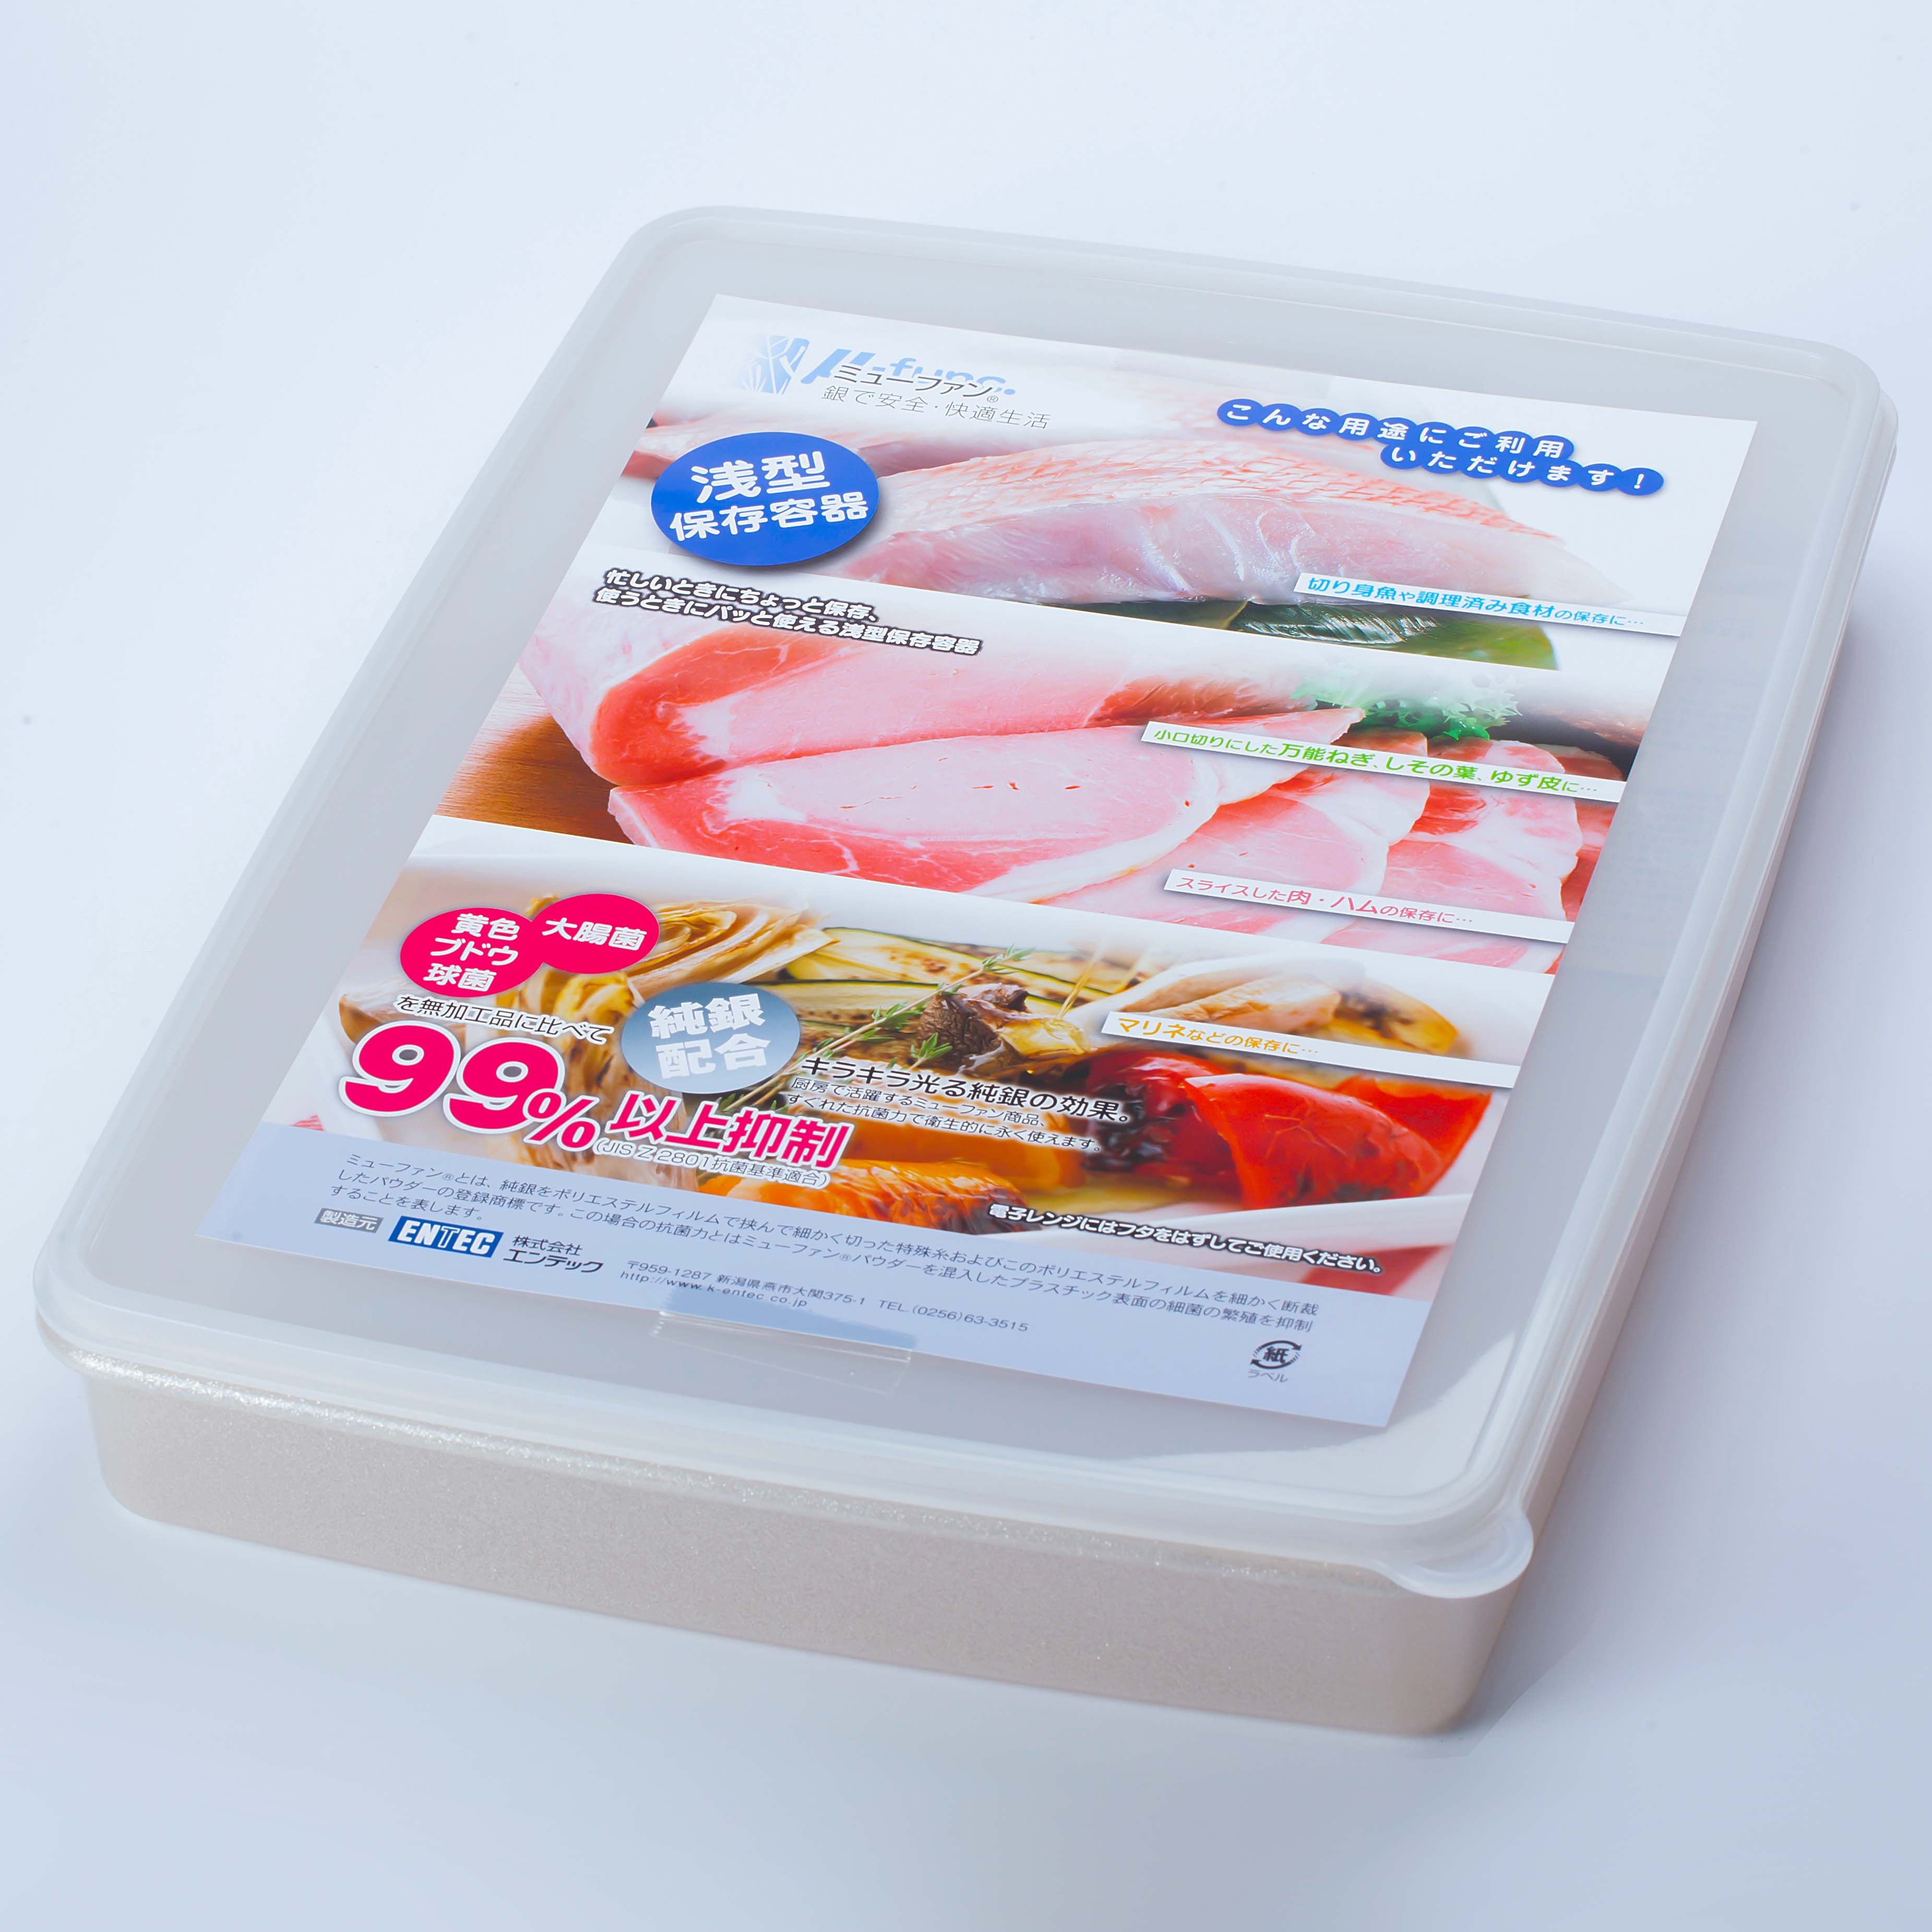 日本製mju-func®妙屋房銀纖維銀離子薄型抗菌保鮮盒T6-M134